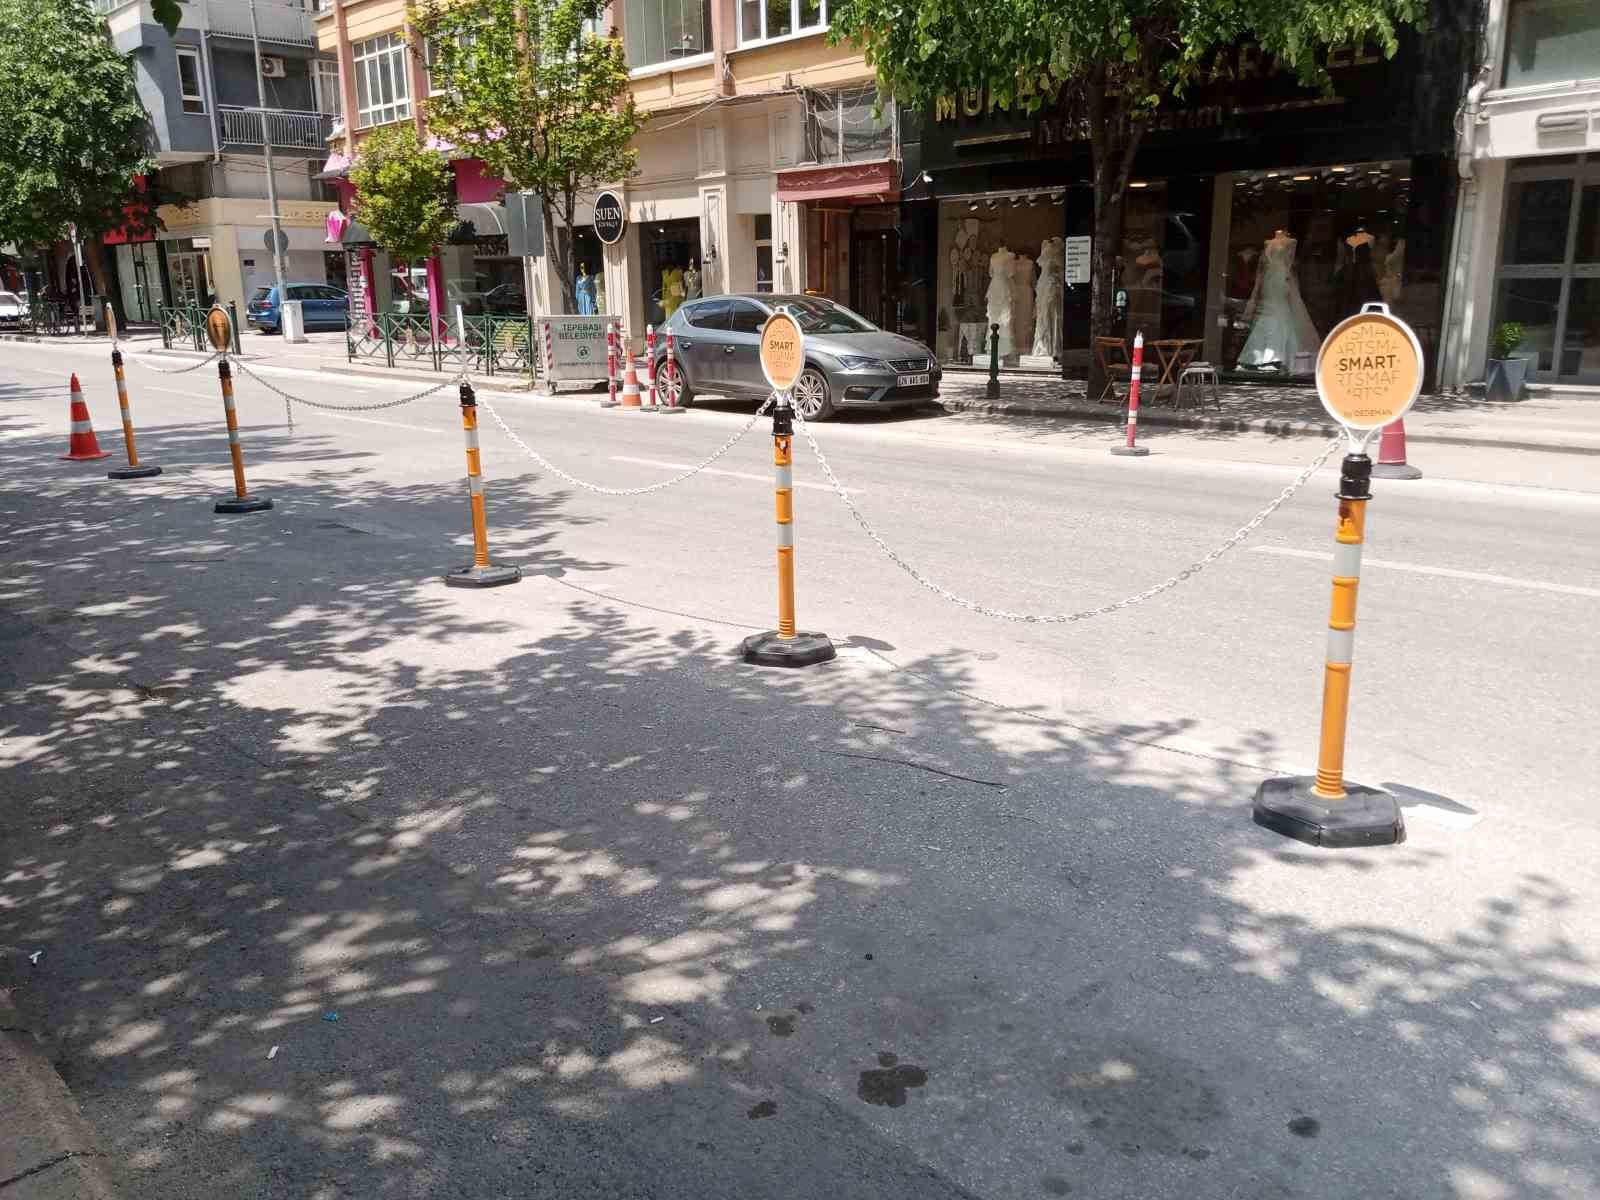 Eskişehir Büyükşehir Belediyesi’nin otopark uygulamasına tepki